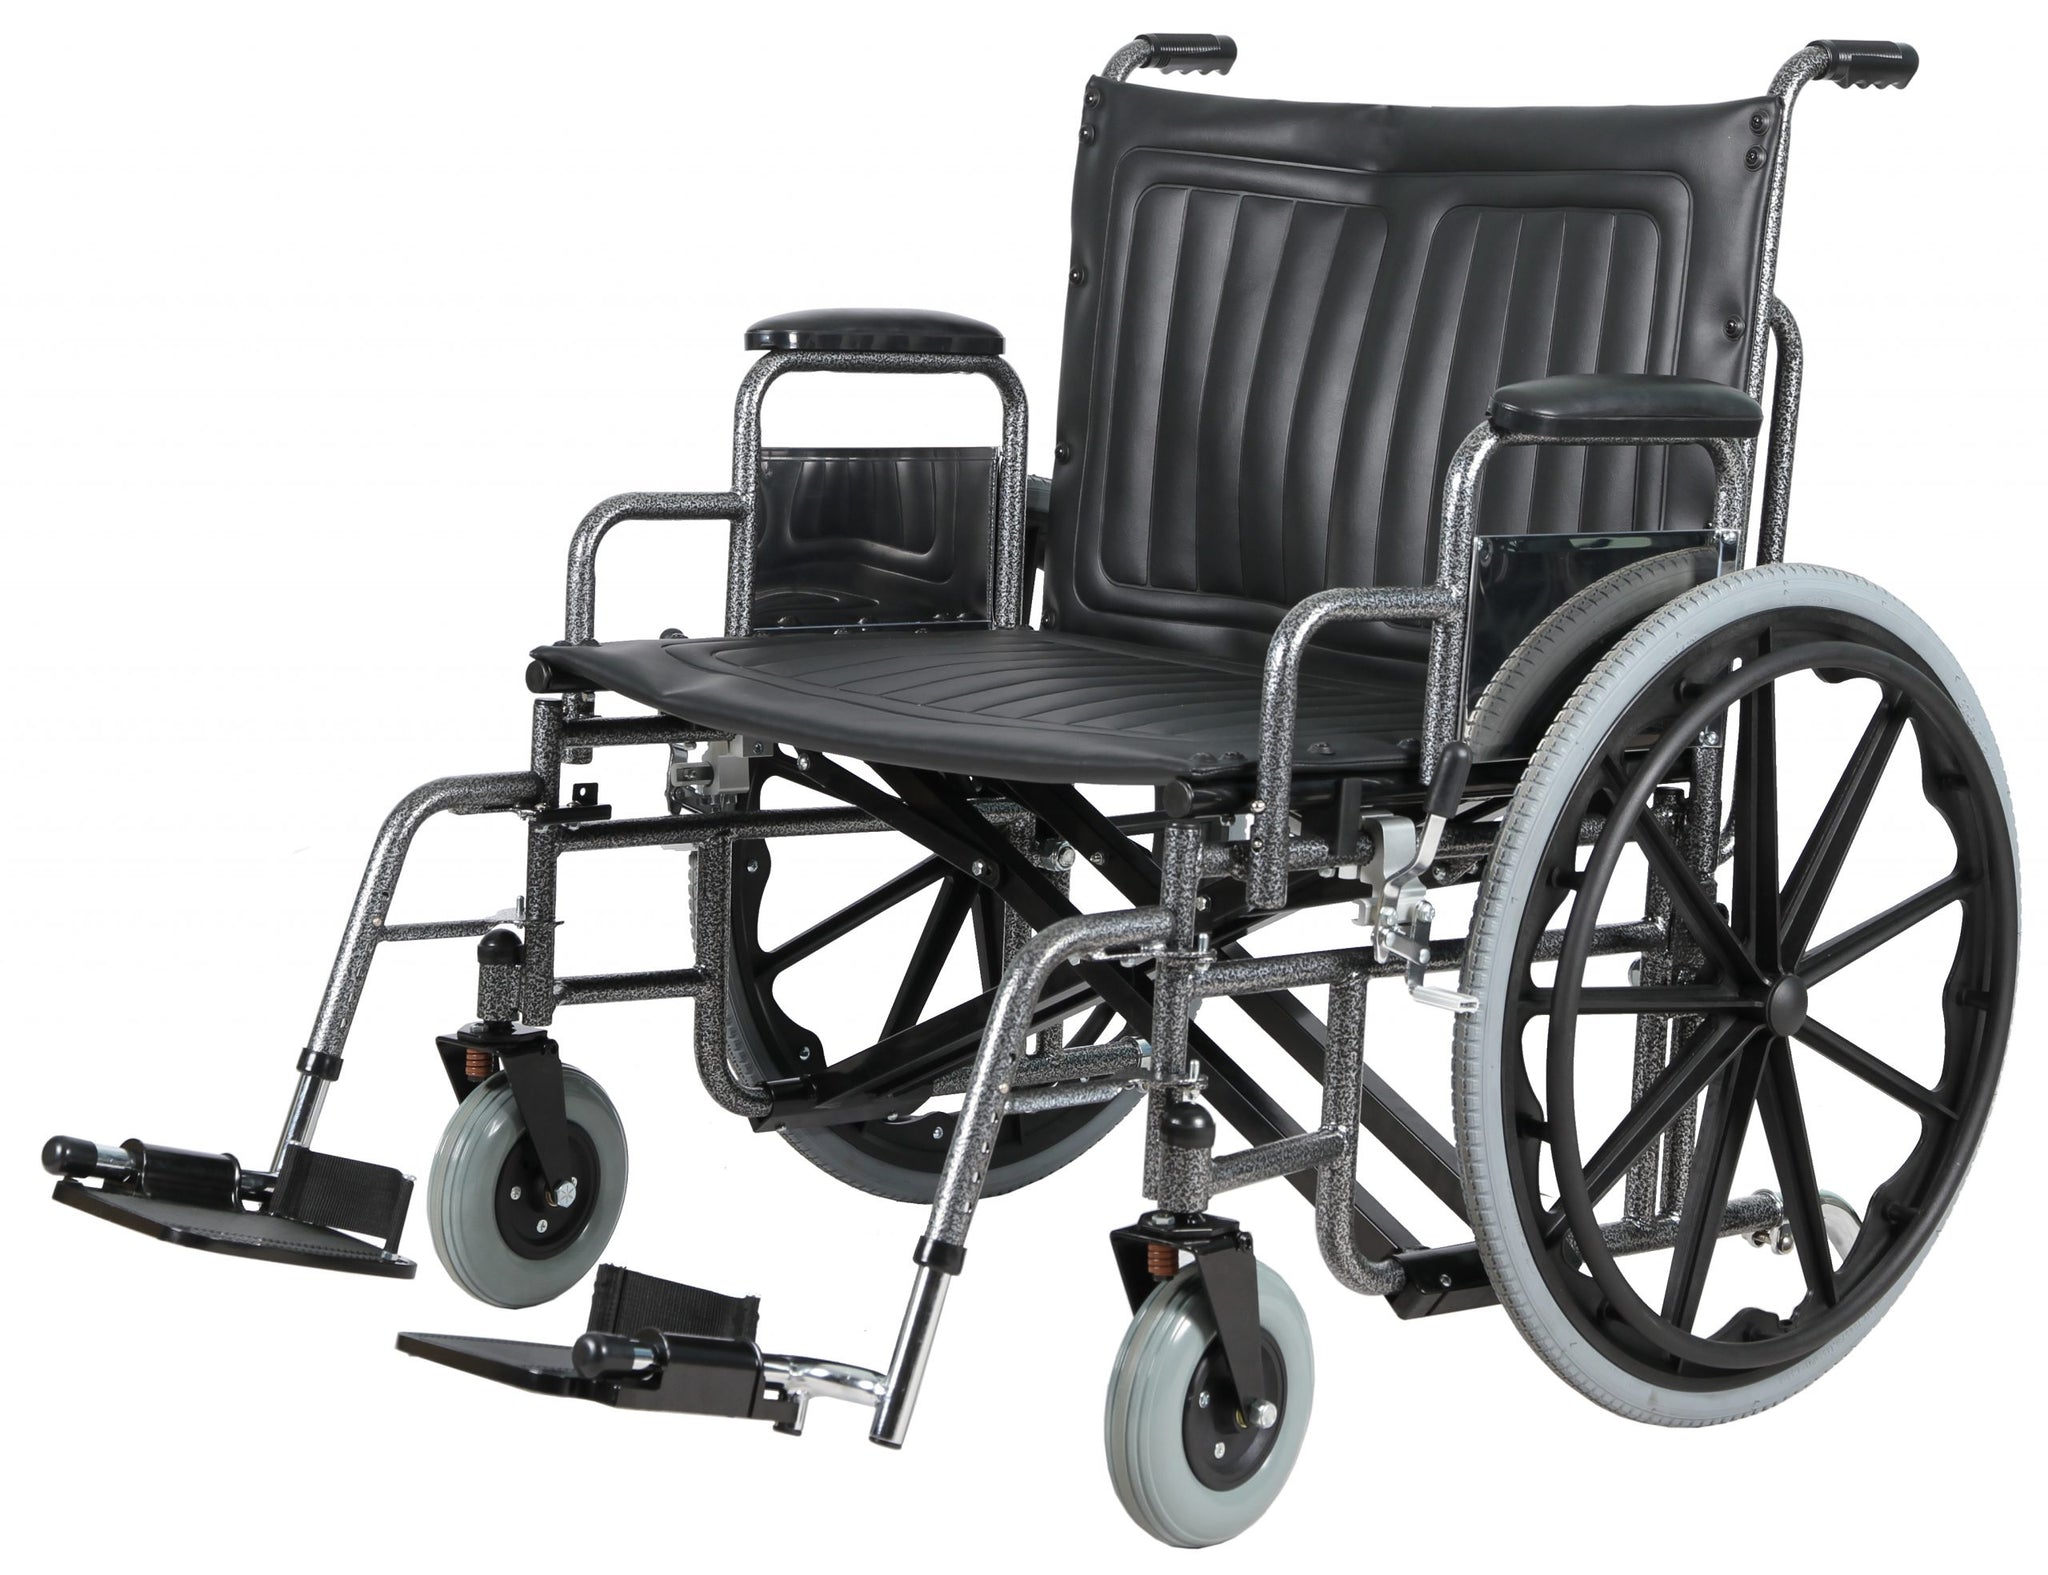 Costcare Millenium Bariatric Wheelchair CXD K0007